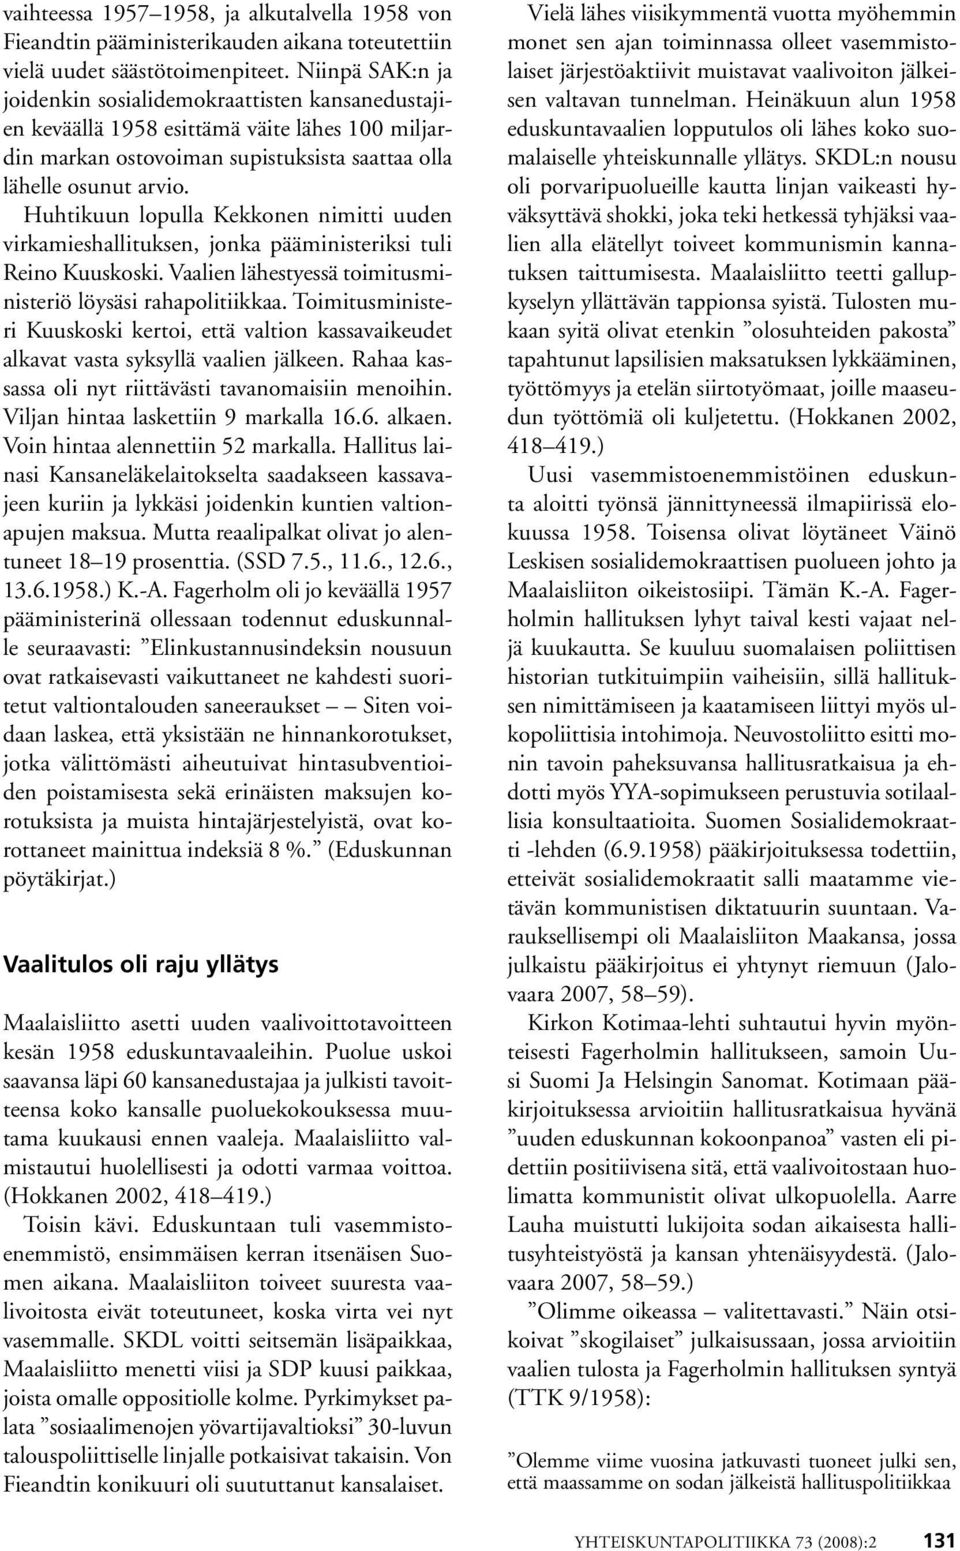 Huhtikuun lopulla Kekkonen nimitti uuden virkamieshallituksen, jonka pääministeriksi tuli Reino Kuuskoski. Vaalien lähestyessä toimitusministeriö löysäsi rahapolitiikkaa.